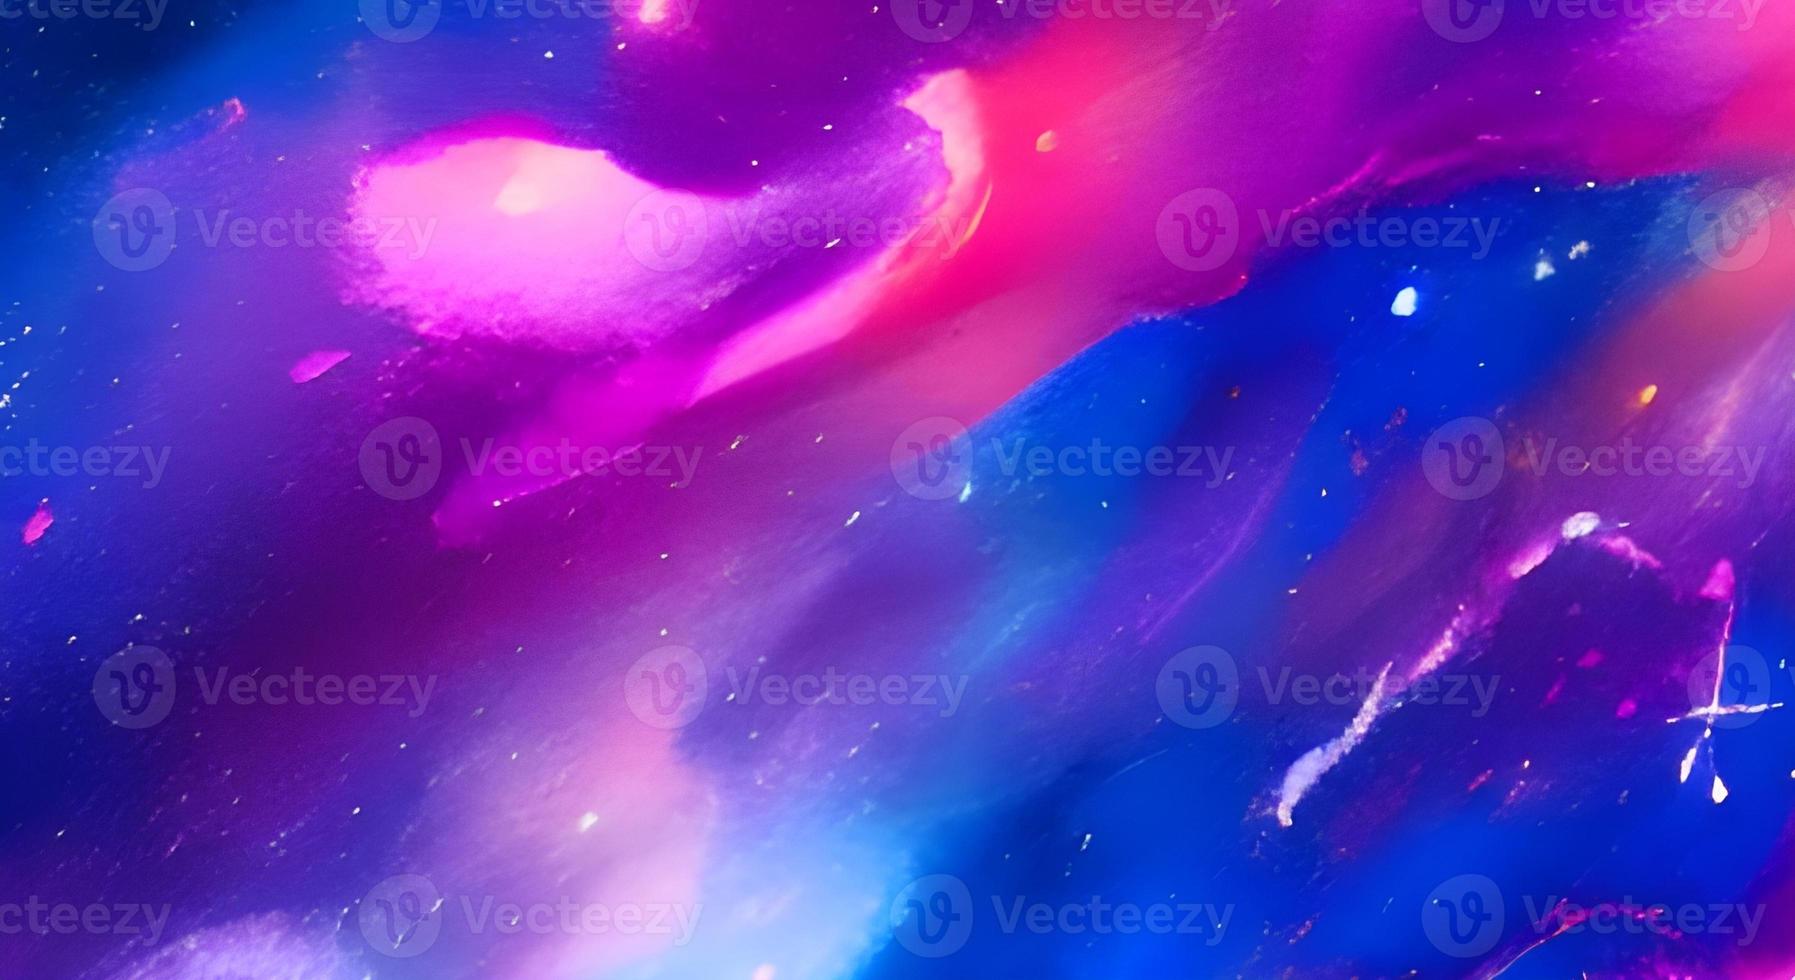 buraco negro, papel de parede de ficção científica. beleza do espaço profundo. gráficos coloridos para fundo, como ondas de água, nuvens, céu noturno, universo, galáxia, planetas, foto